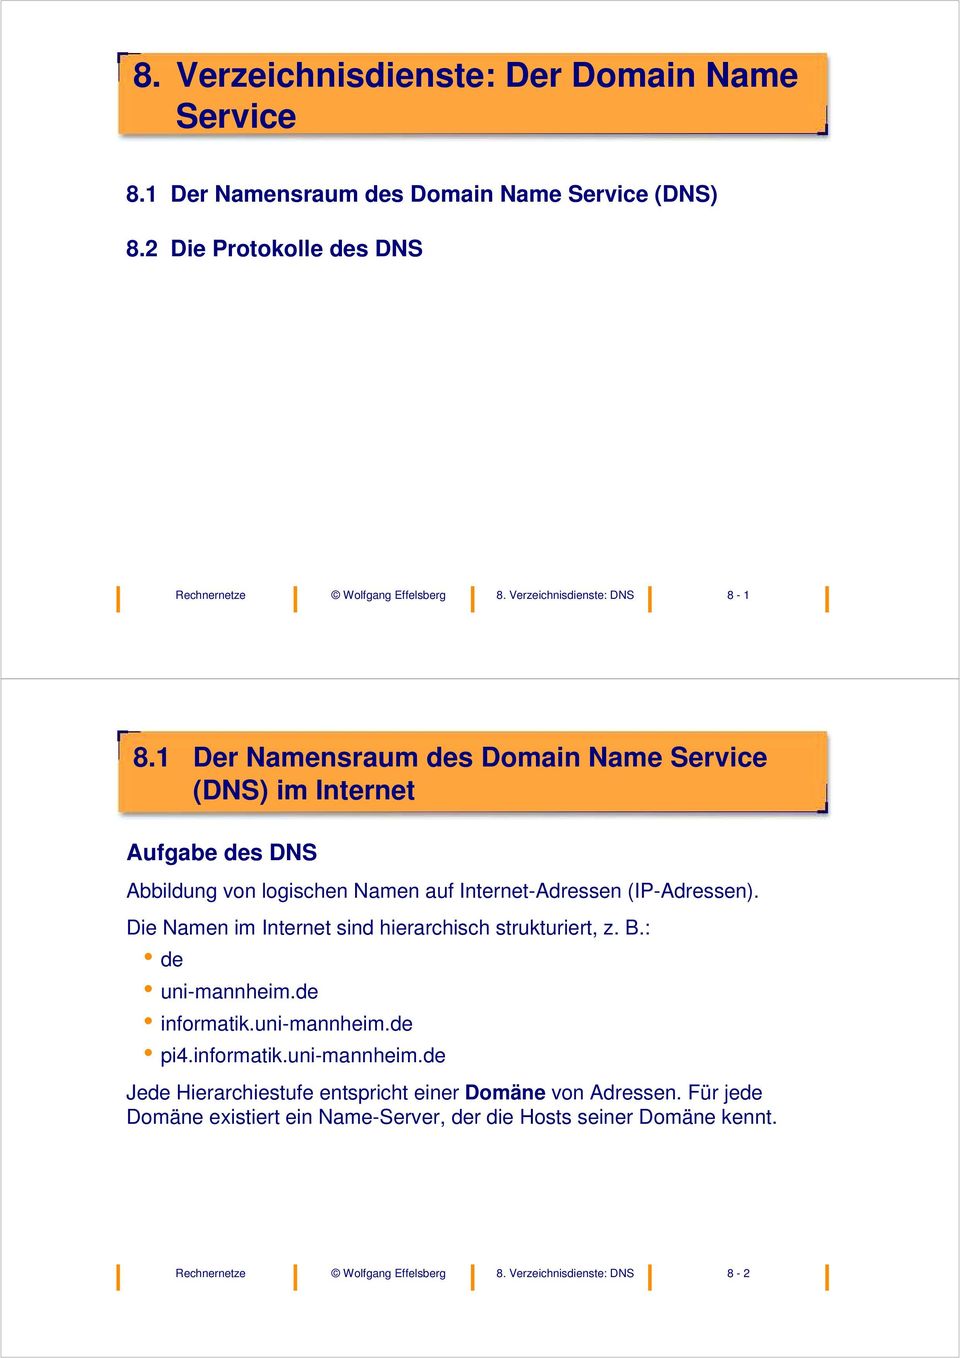 1 Der Namensraum des Domain Name Service (DNS) im Internet Aufgabe des DNS Abbildung von logischen Namen auf Internet-Adressen (IP-Adressen).